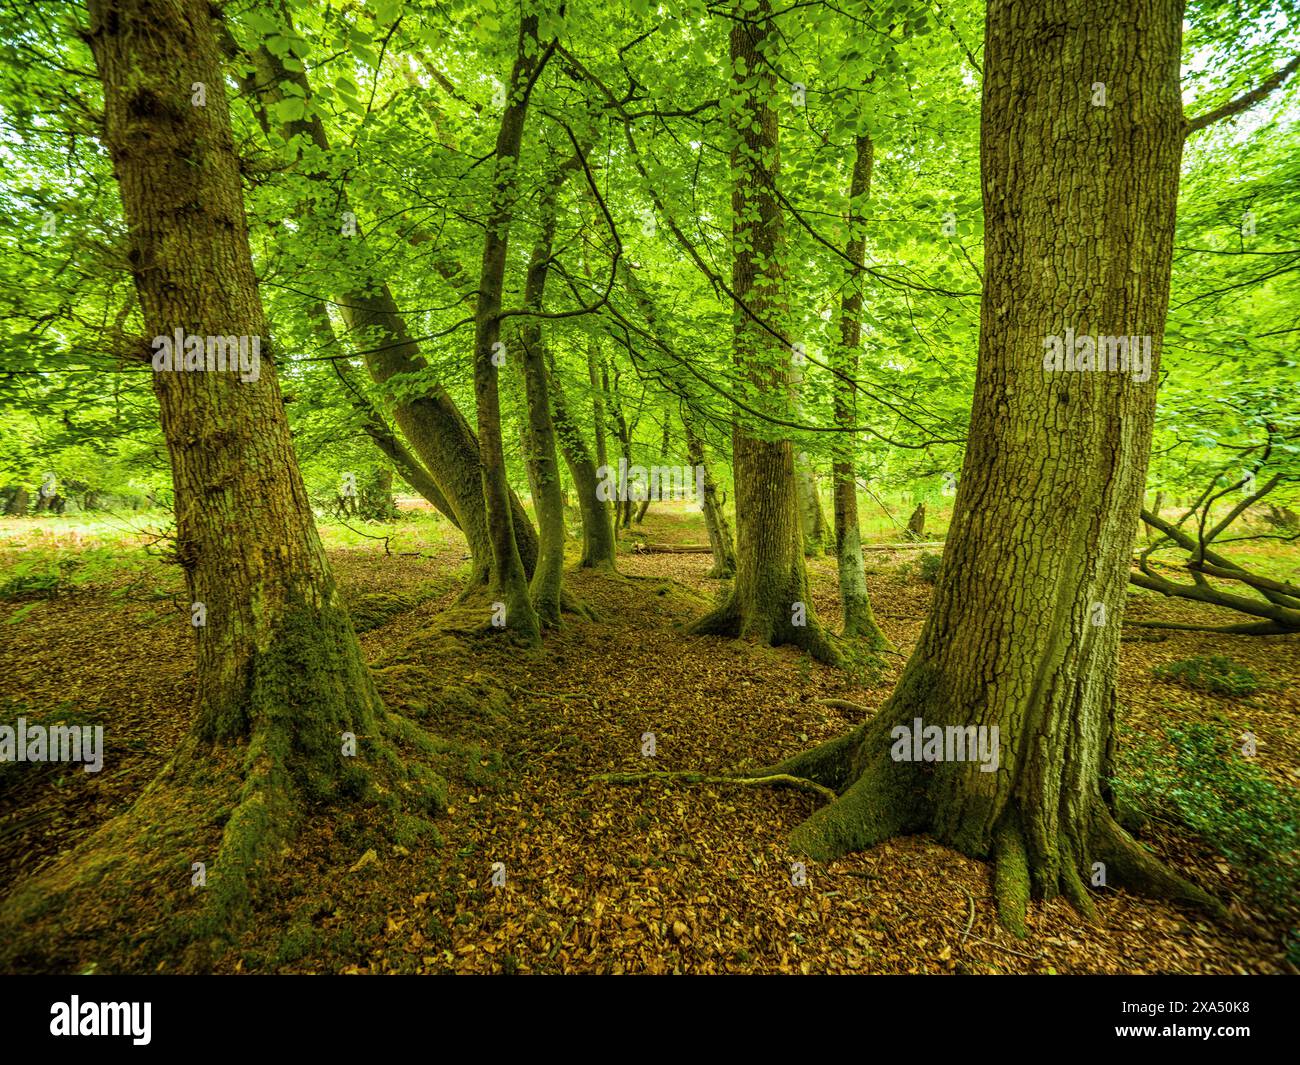 Sonnenlicht filtert durch das grüne Baldachin eines dichten, grünen Waldes und beleuchtet den Waldboden, der mit gefallenen Blättern bedeckt ist. Stockfoto